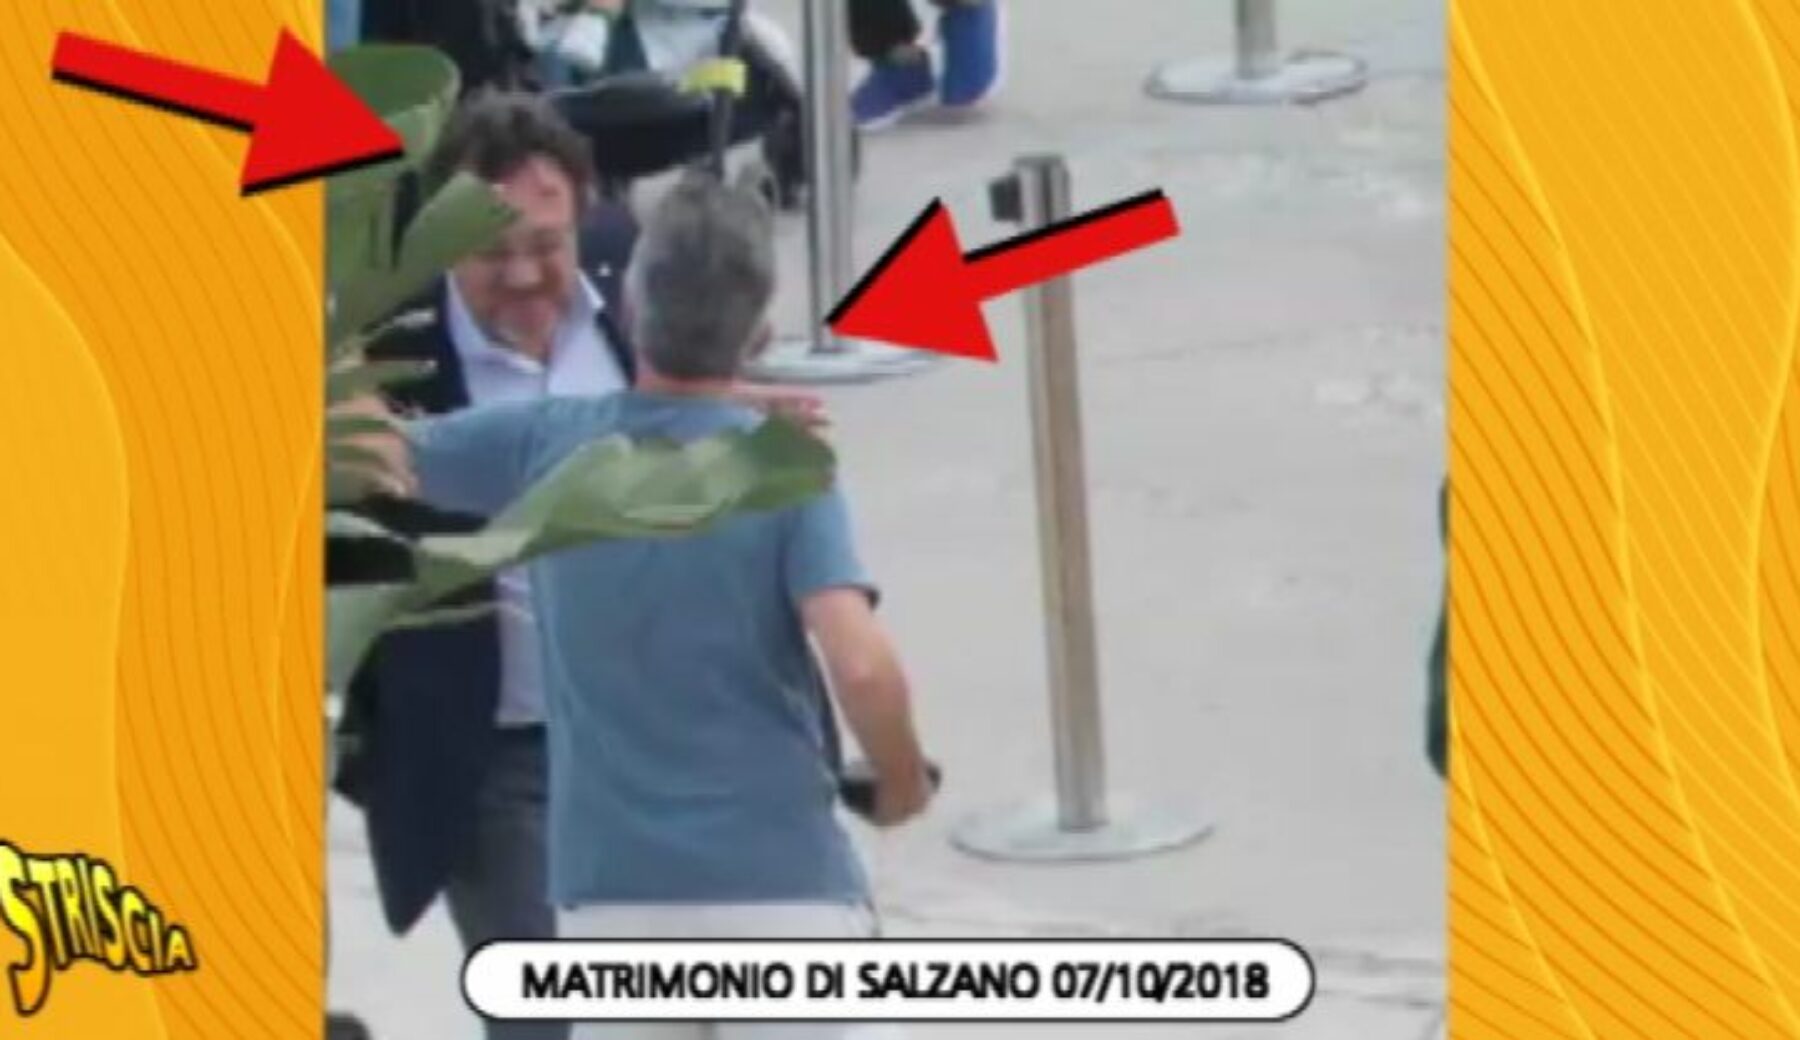 Stasera a Striscia la notizia, le foto inedite del bacio tra Salzano e Mario Orfeo